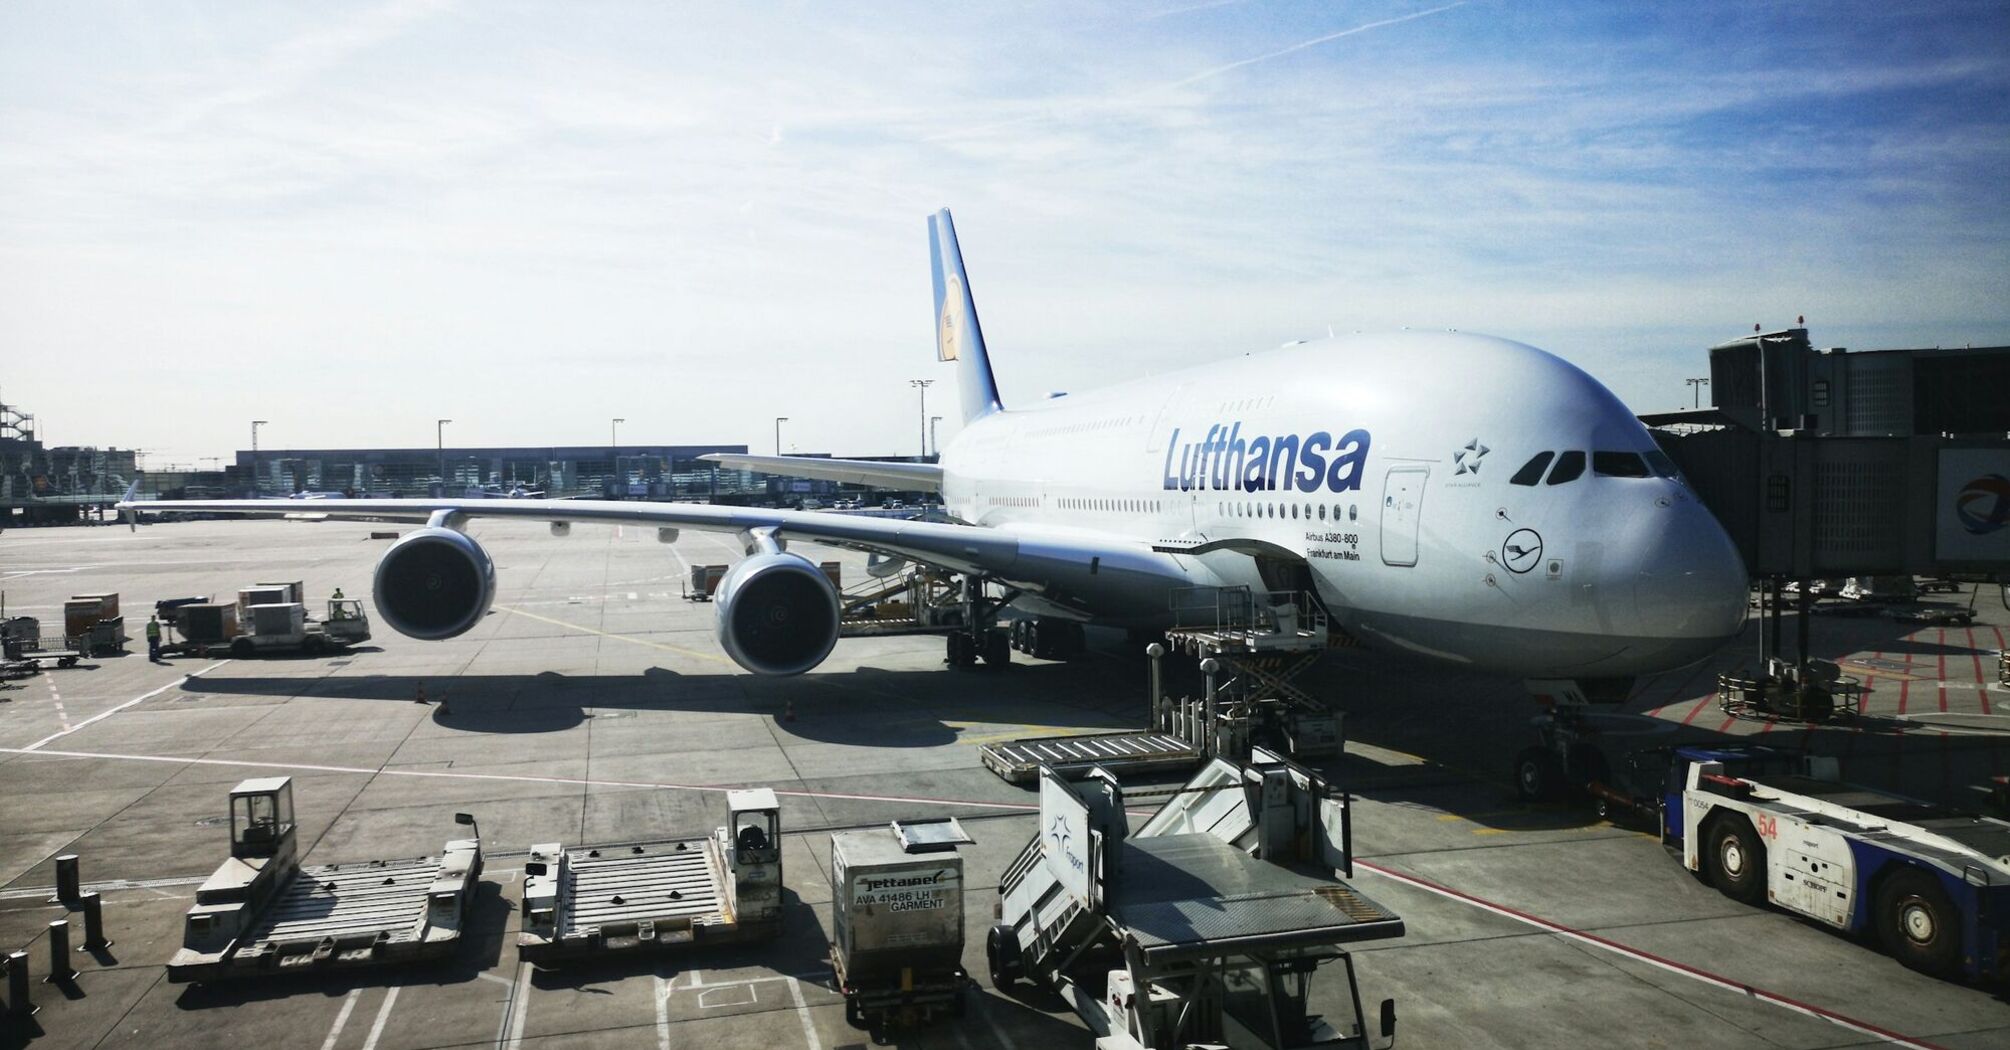 Lufthansa airplane at an airport gate